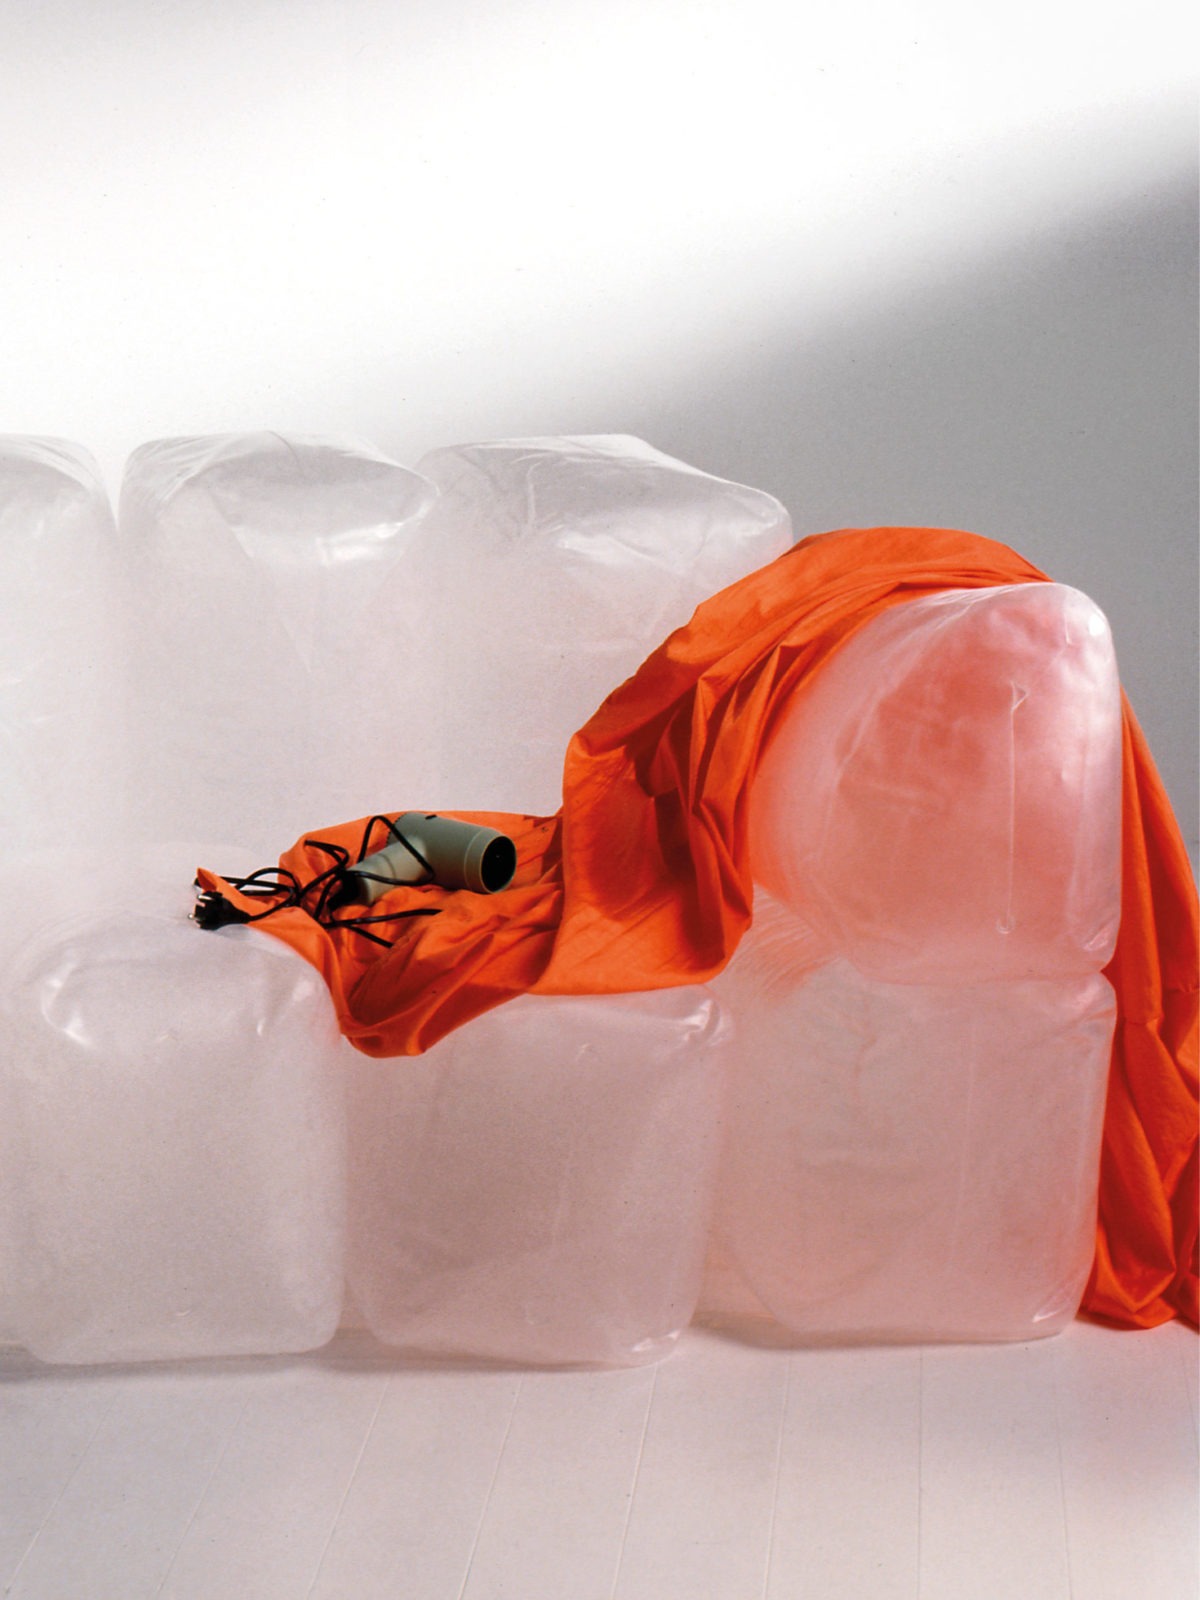 Un secador encima de un sofá hinchable INNERLIG. Una funda de tela naranja envuelve uno de los brazos.